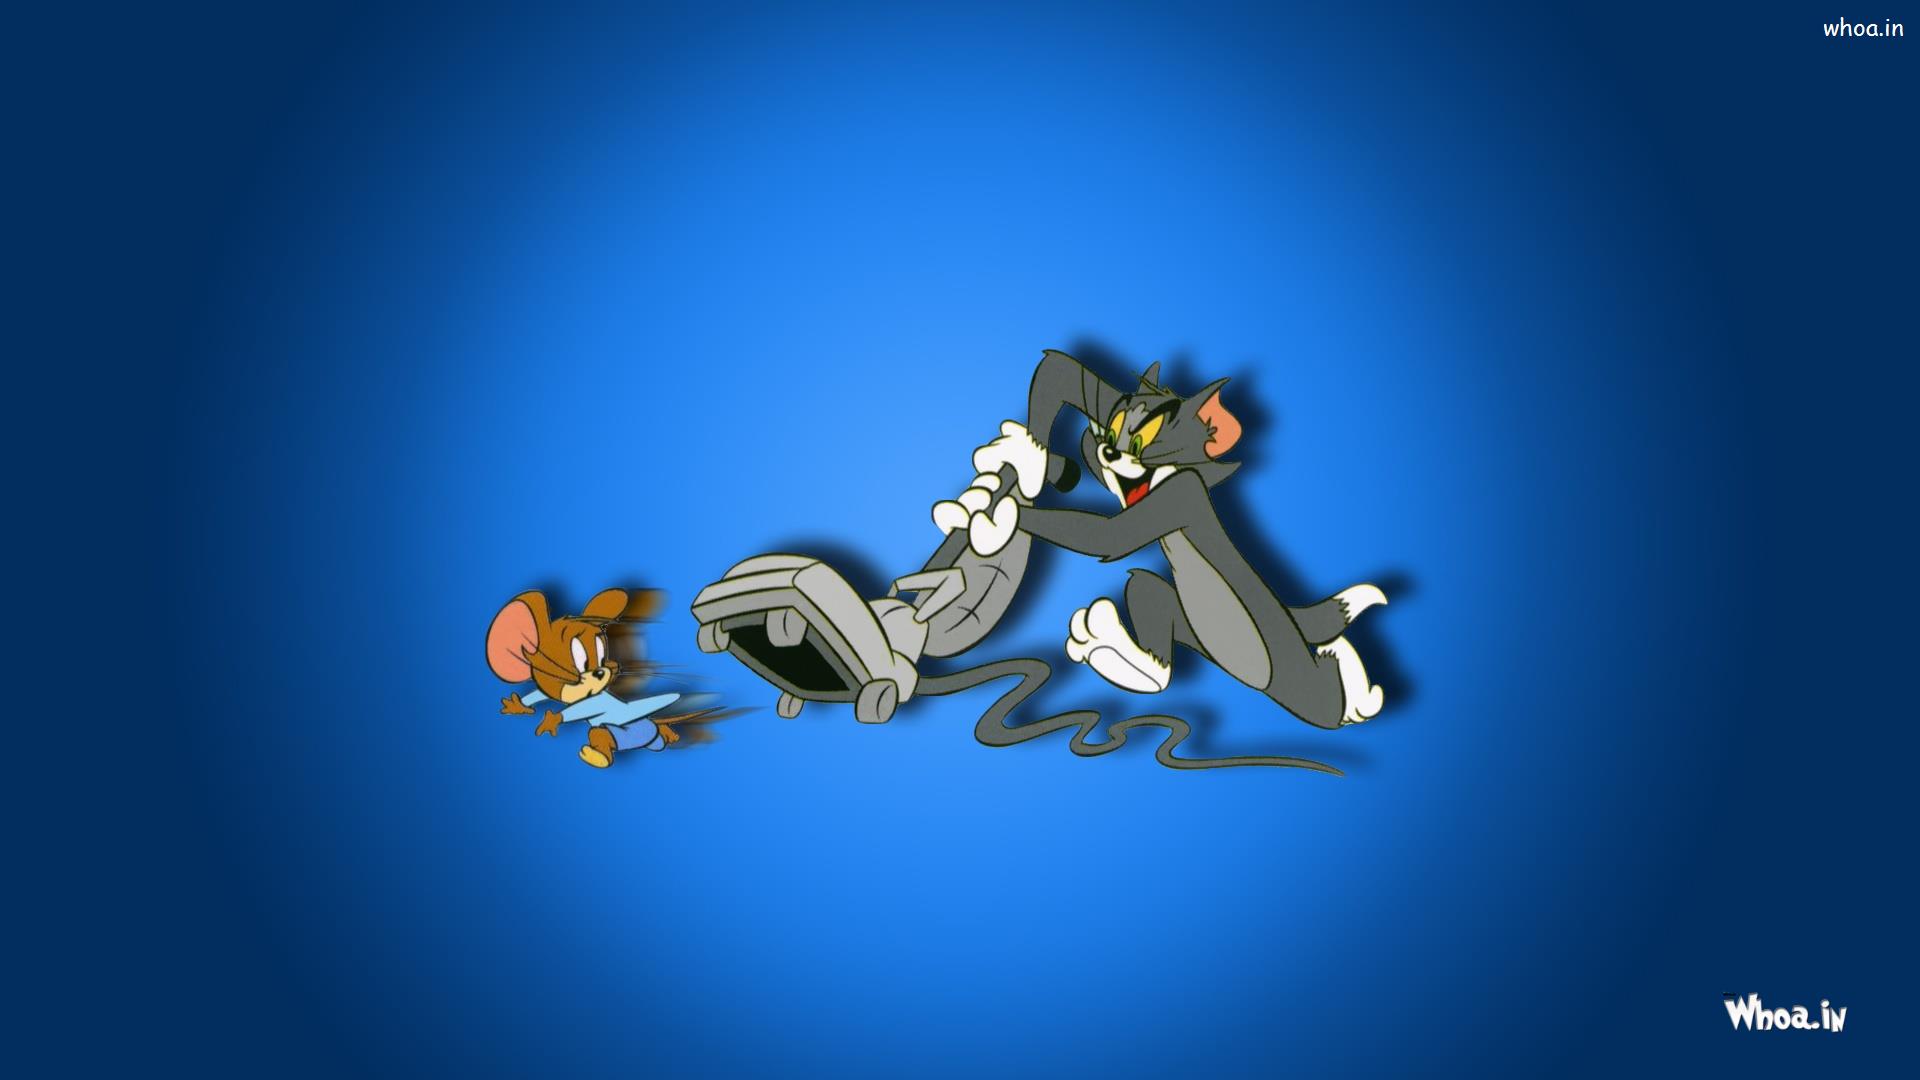 Tom & Jerry Fight HD Cartoon Fun Wallpaper